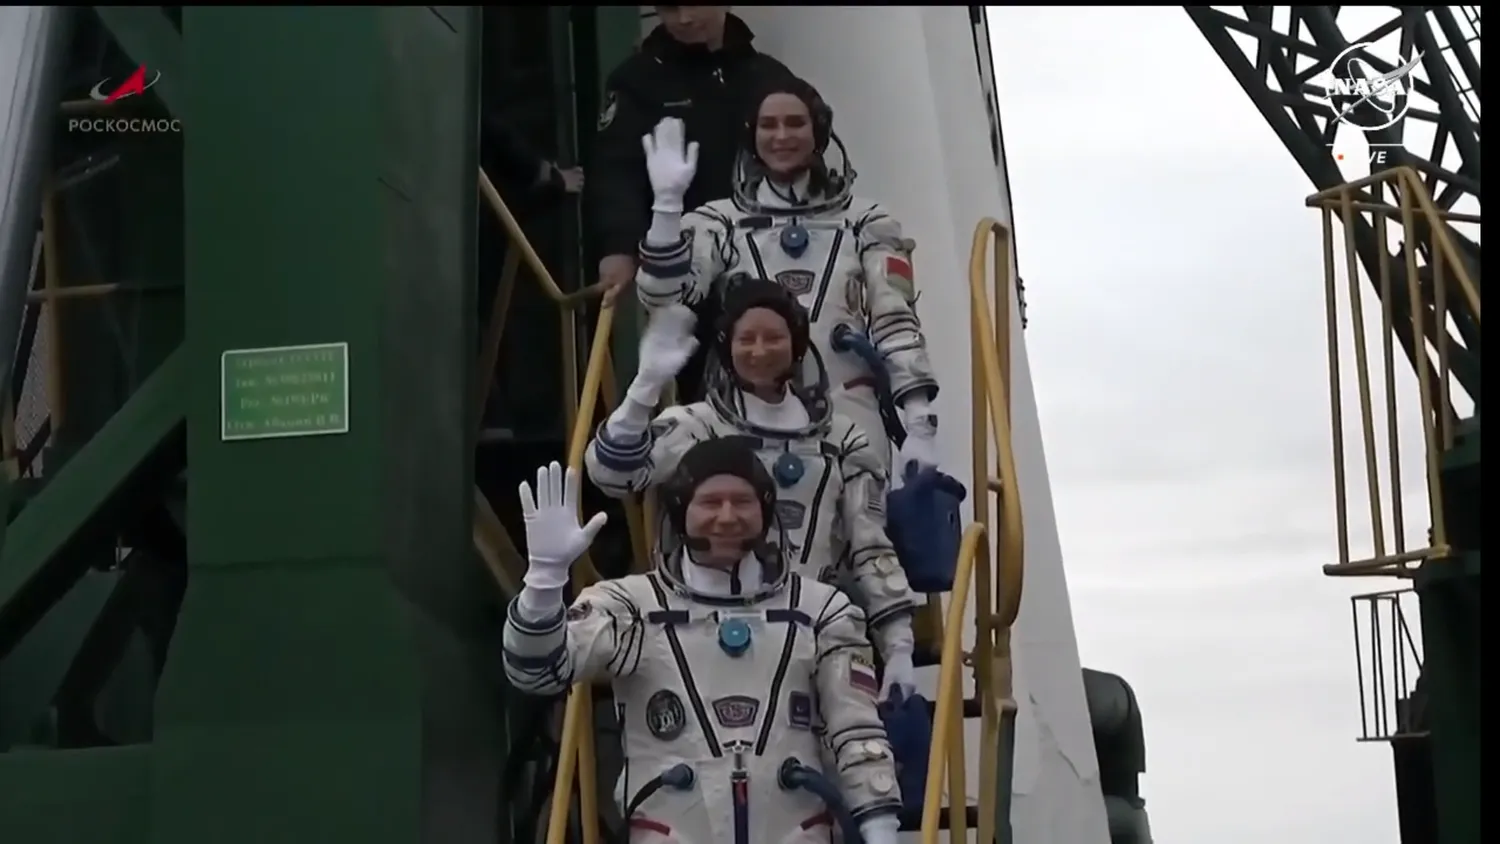 Drei Astronauten winken zum Abschied, während sie sich auf das Einsteigen in ihre russische Rakete vorbereiten.